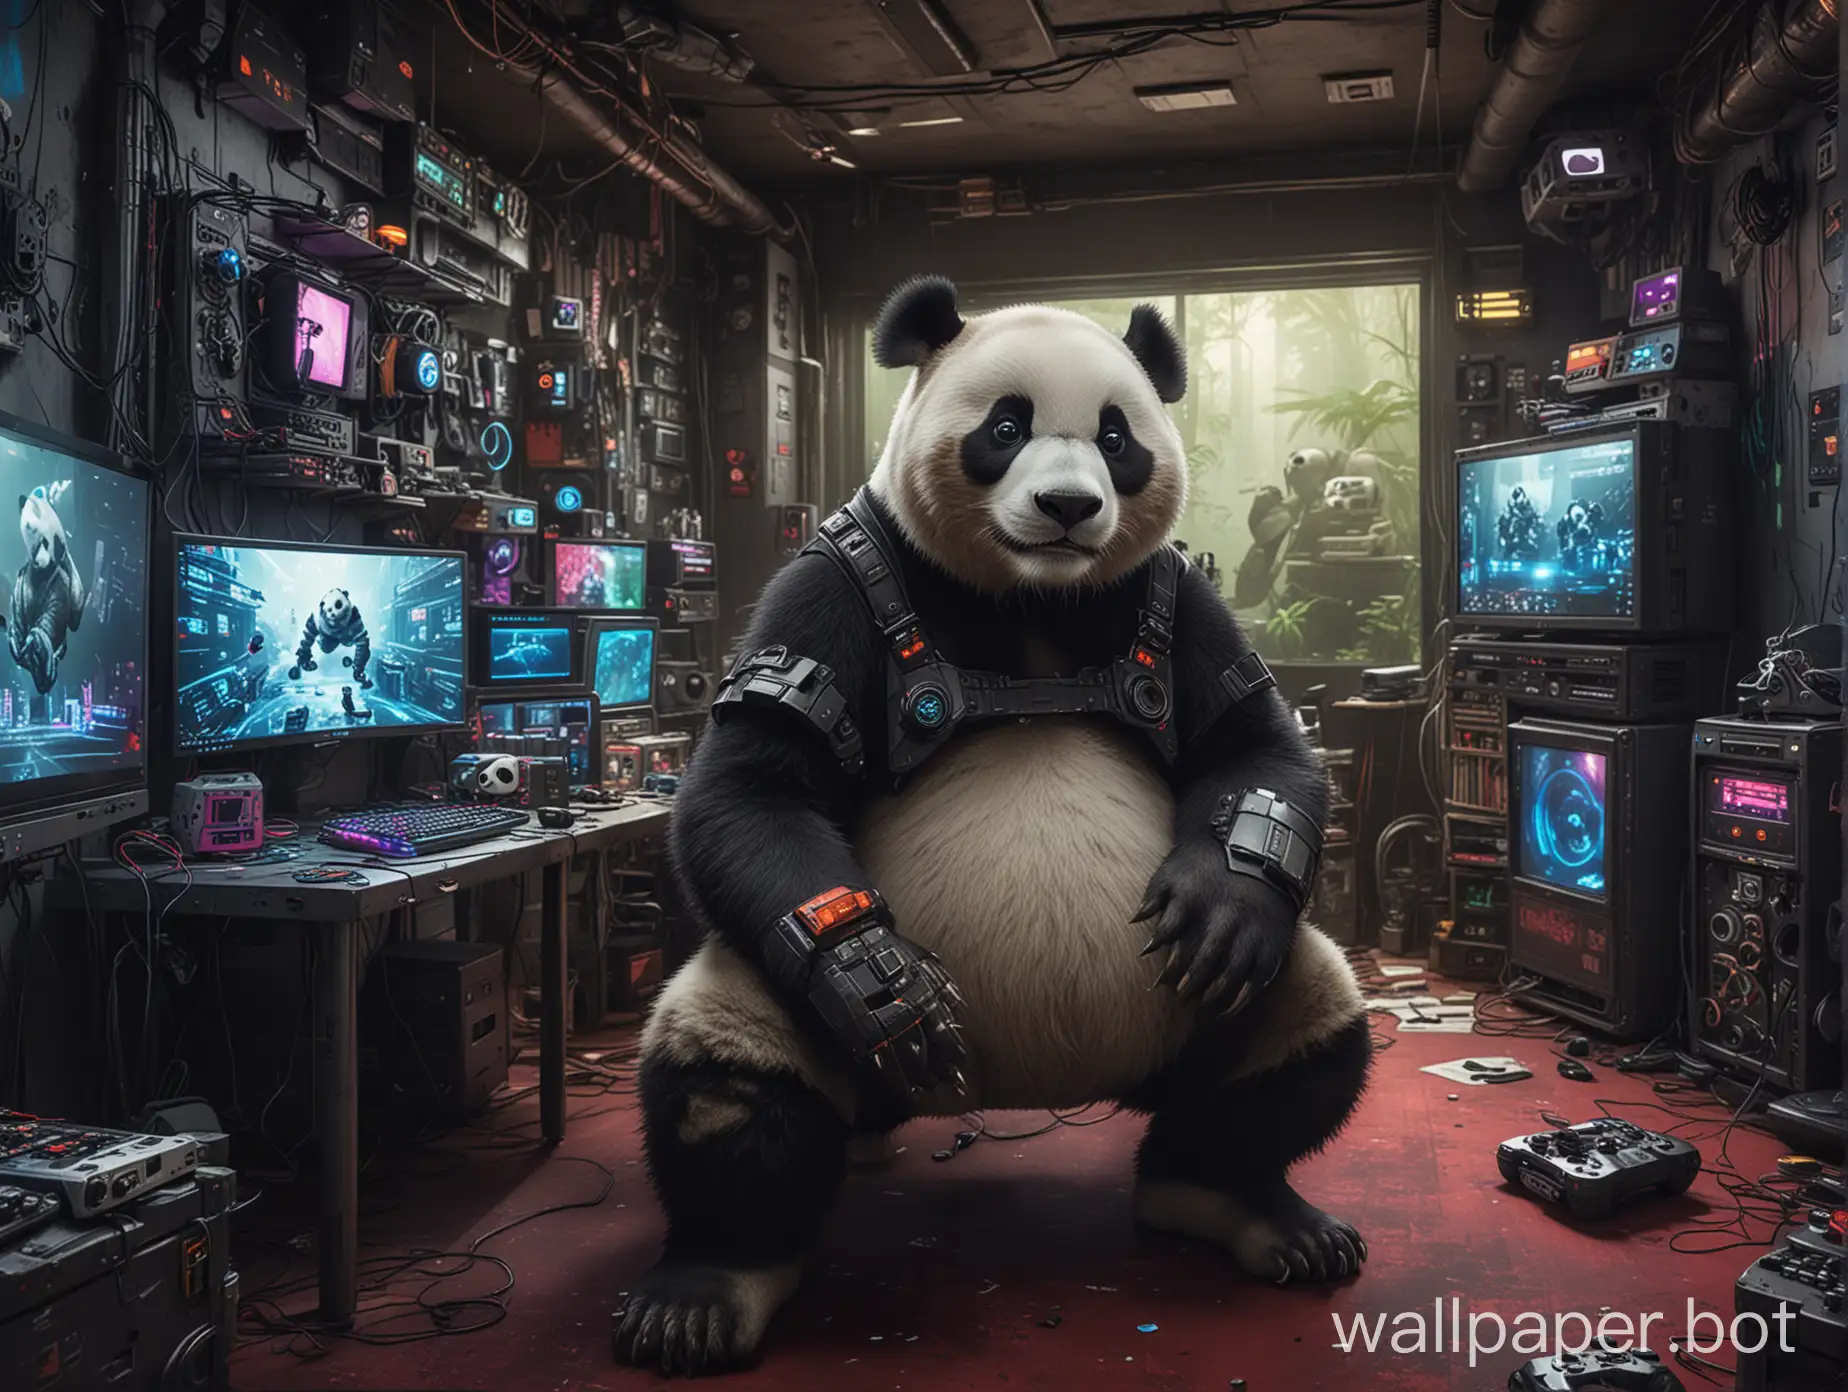 Cyberpunk-Panda-Playing-Video-Games-in-HiTech-Gaming-Den